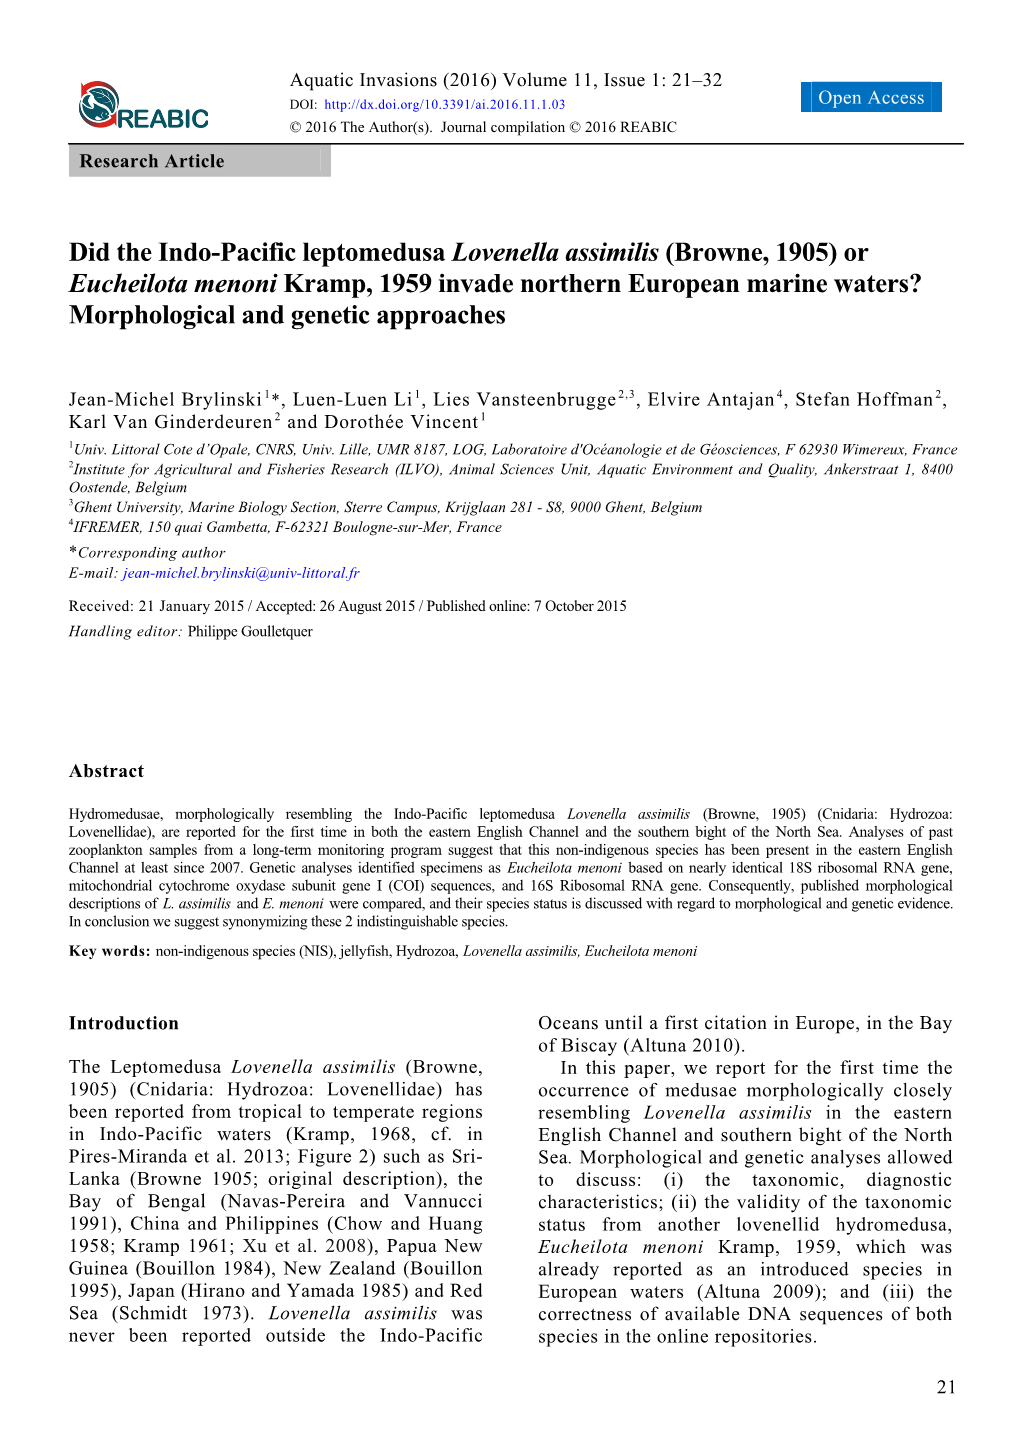 Did the Indo-Pacific Leptomedusa Lovenella